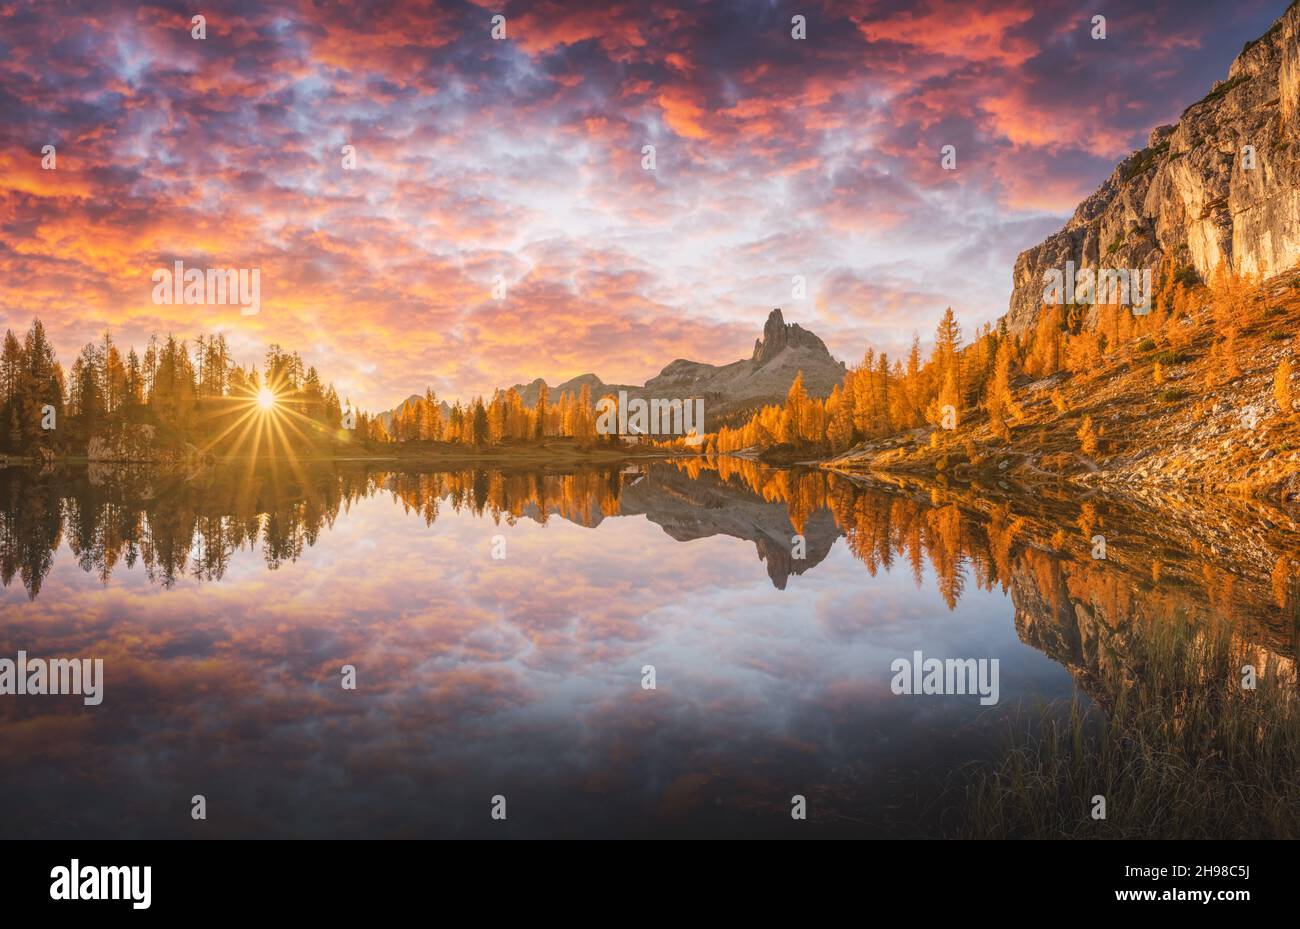 Incroyable lever de soleil violet sur le lac Federa dans les Dolomites APLs.Paysage de montagnes d'automne avec Lago di Federa et larches d'orange vif, Cortina d'Ampezzo, Tyrol du Sud, Dolomites, Italie Banque D'Images